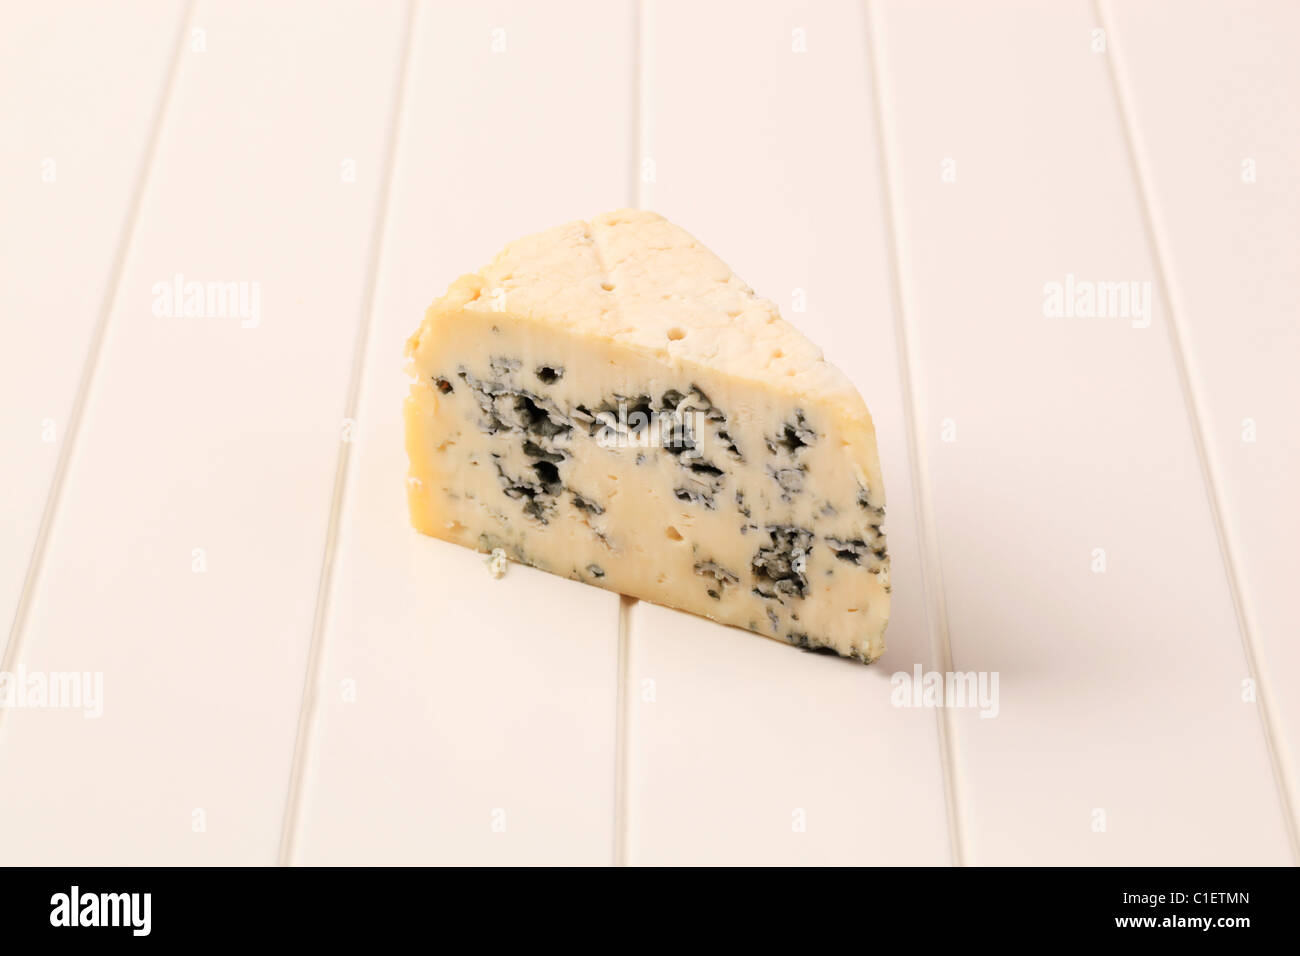 Coin de fromage bleu - studio shot Banque D'Images